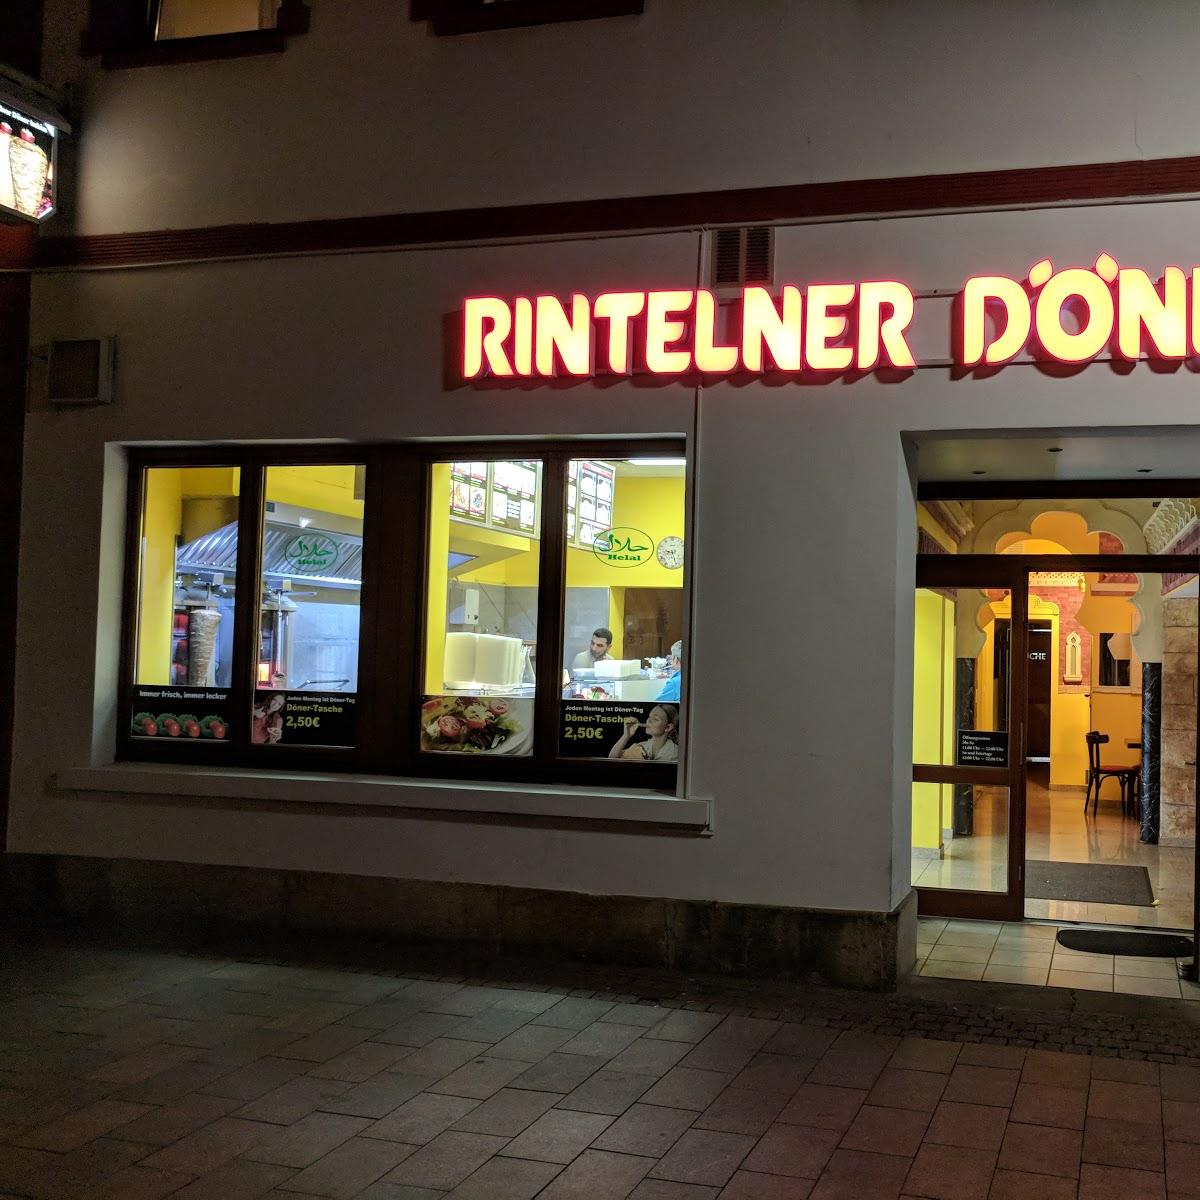 Restaurant "er Döner" in  Rinteln